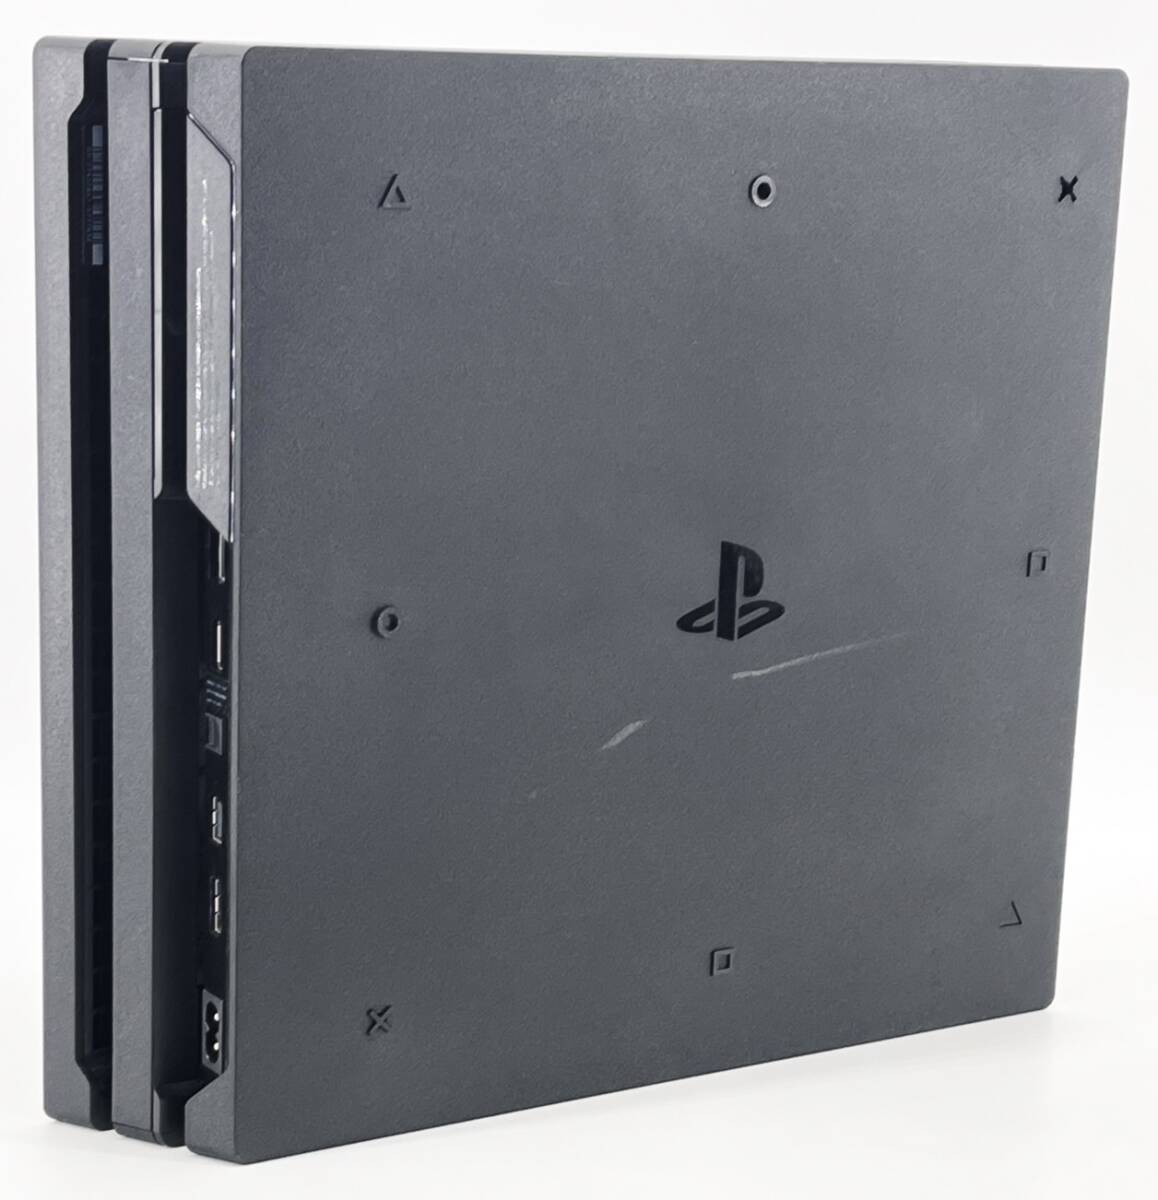 1円スタート 中古ゲーム機 PlayStation4 Pro 1TB CUH-7200BB01 ジェット・ブラック プレステ PS4 プレイステーションの画像2